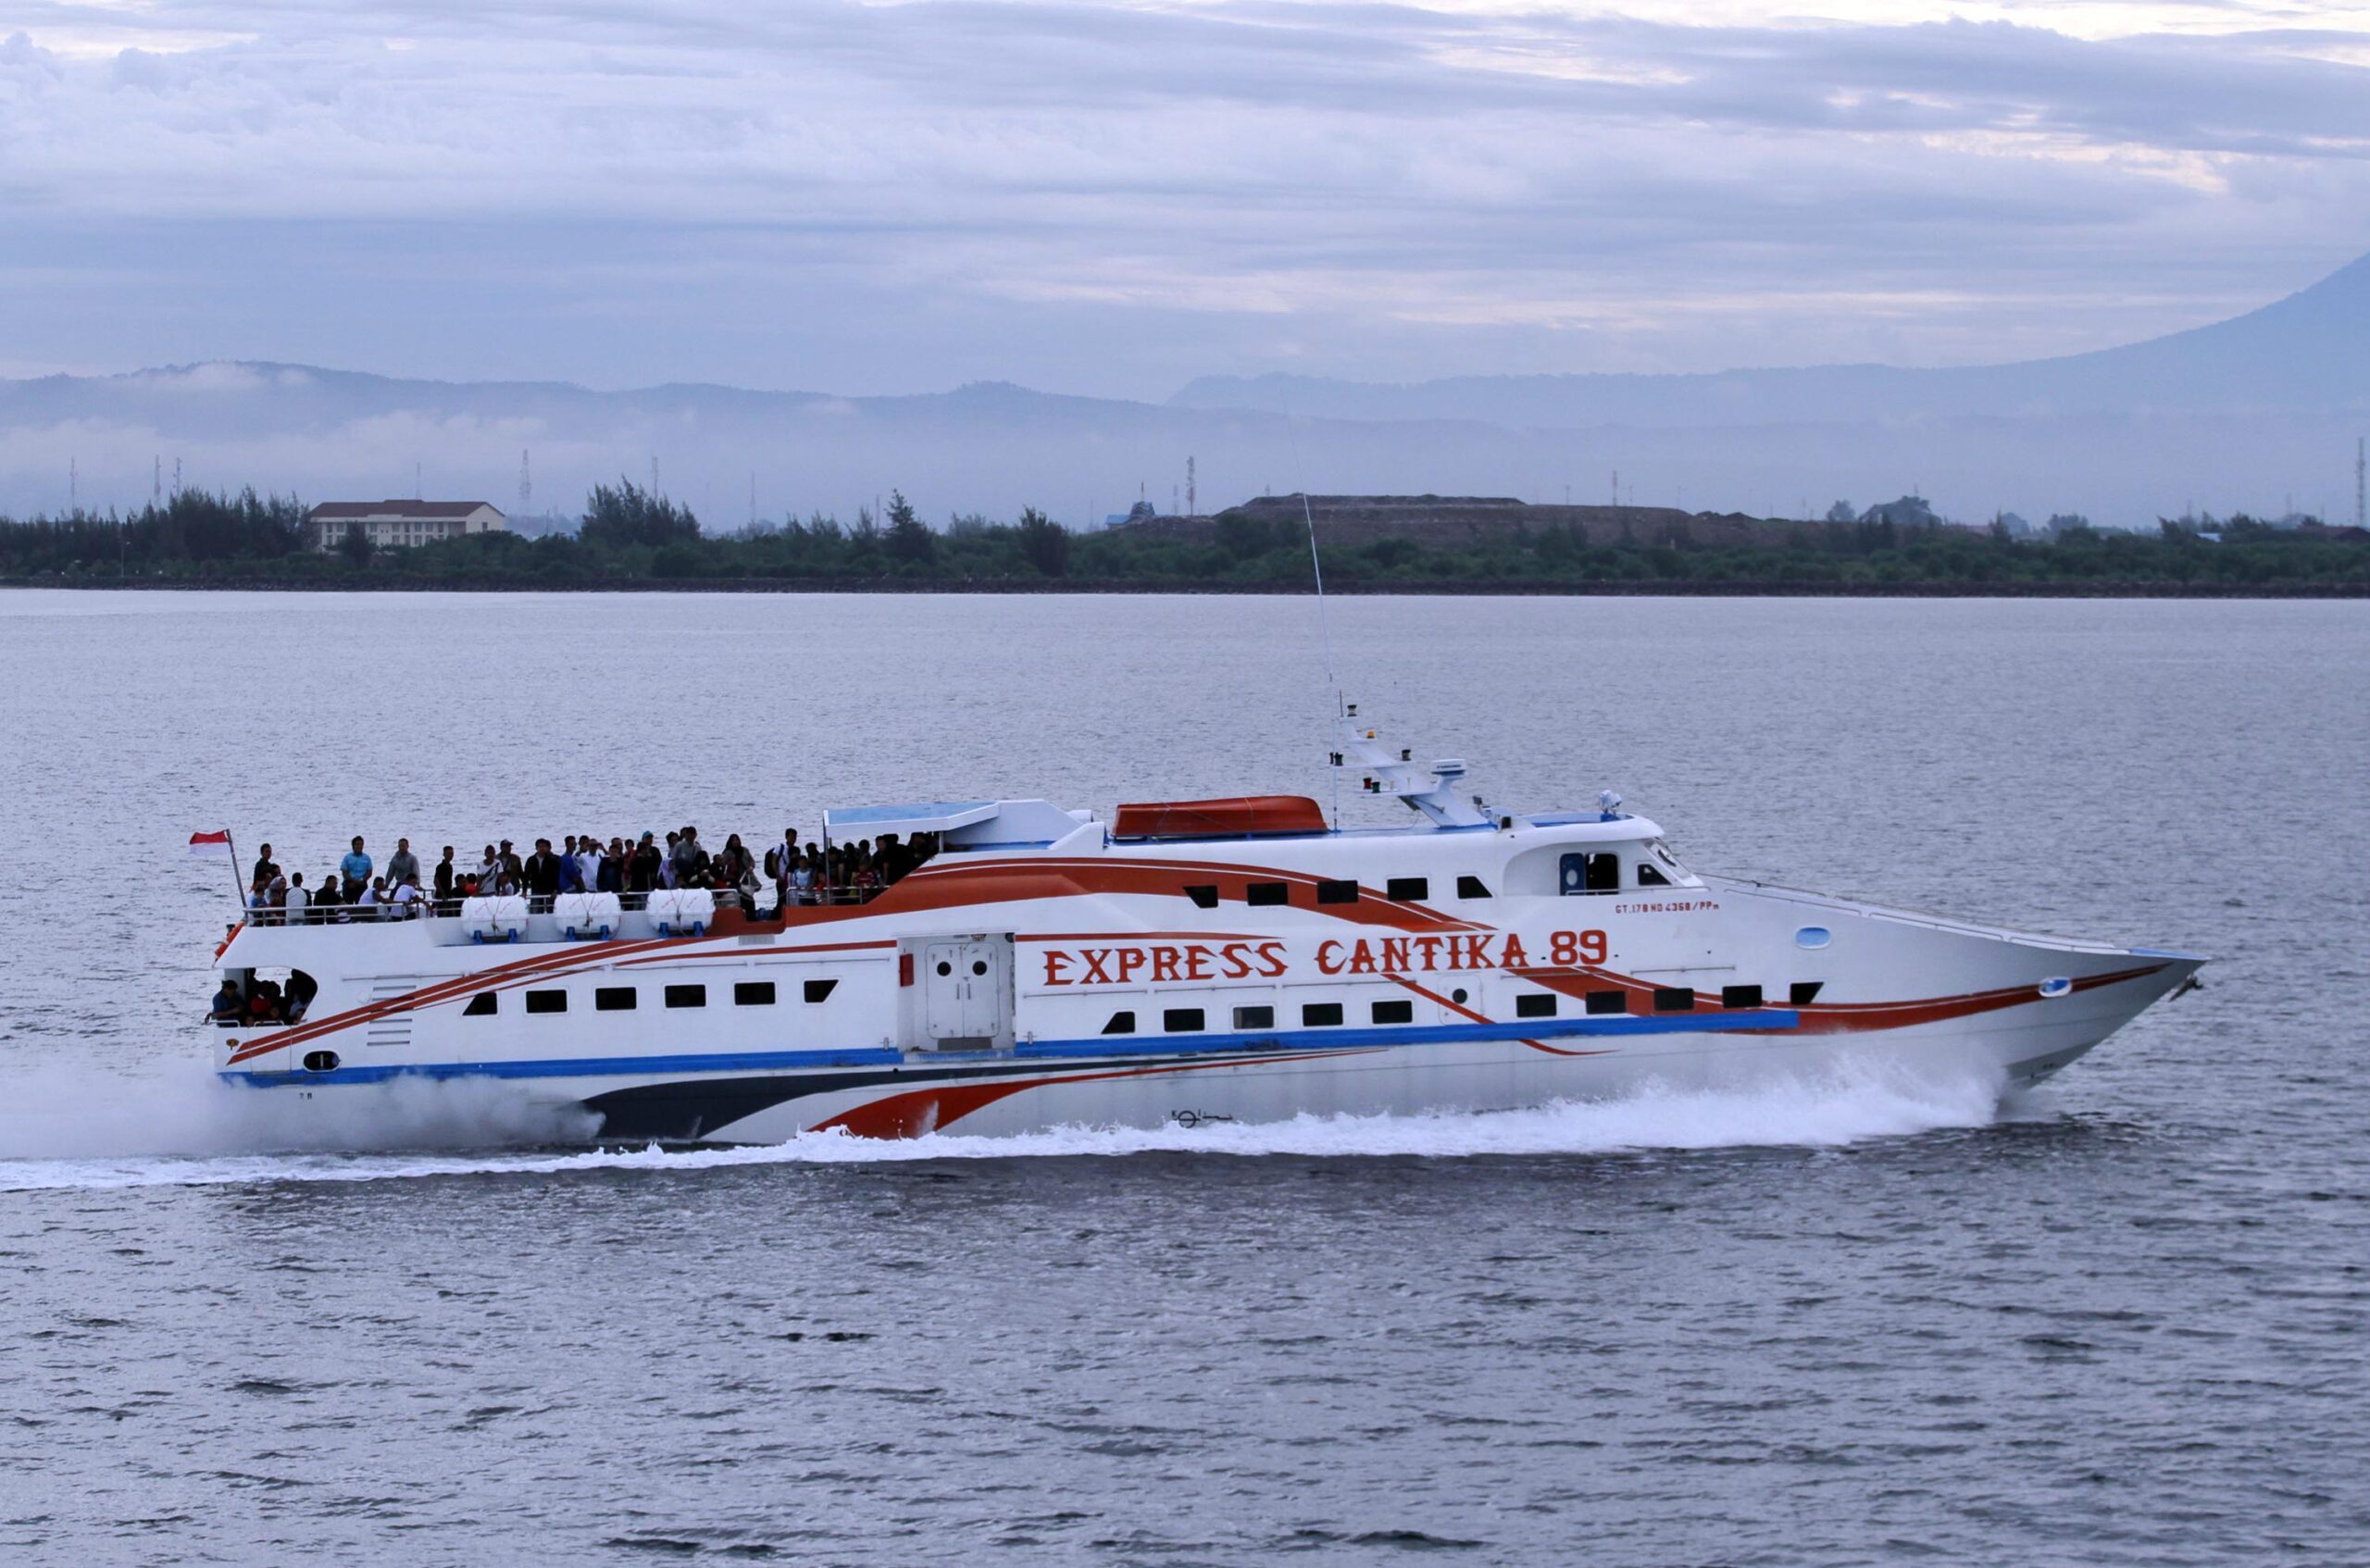 Kapal wisata jurusan Pulau Tidung terbakar, 23 meninggal dunia